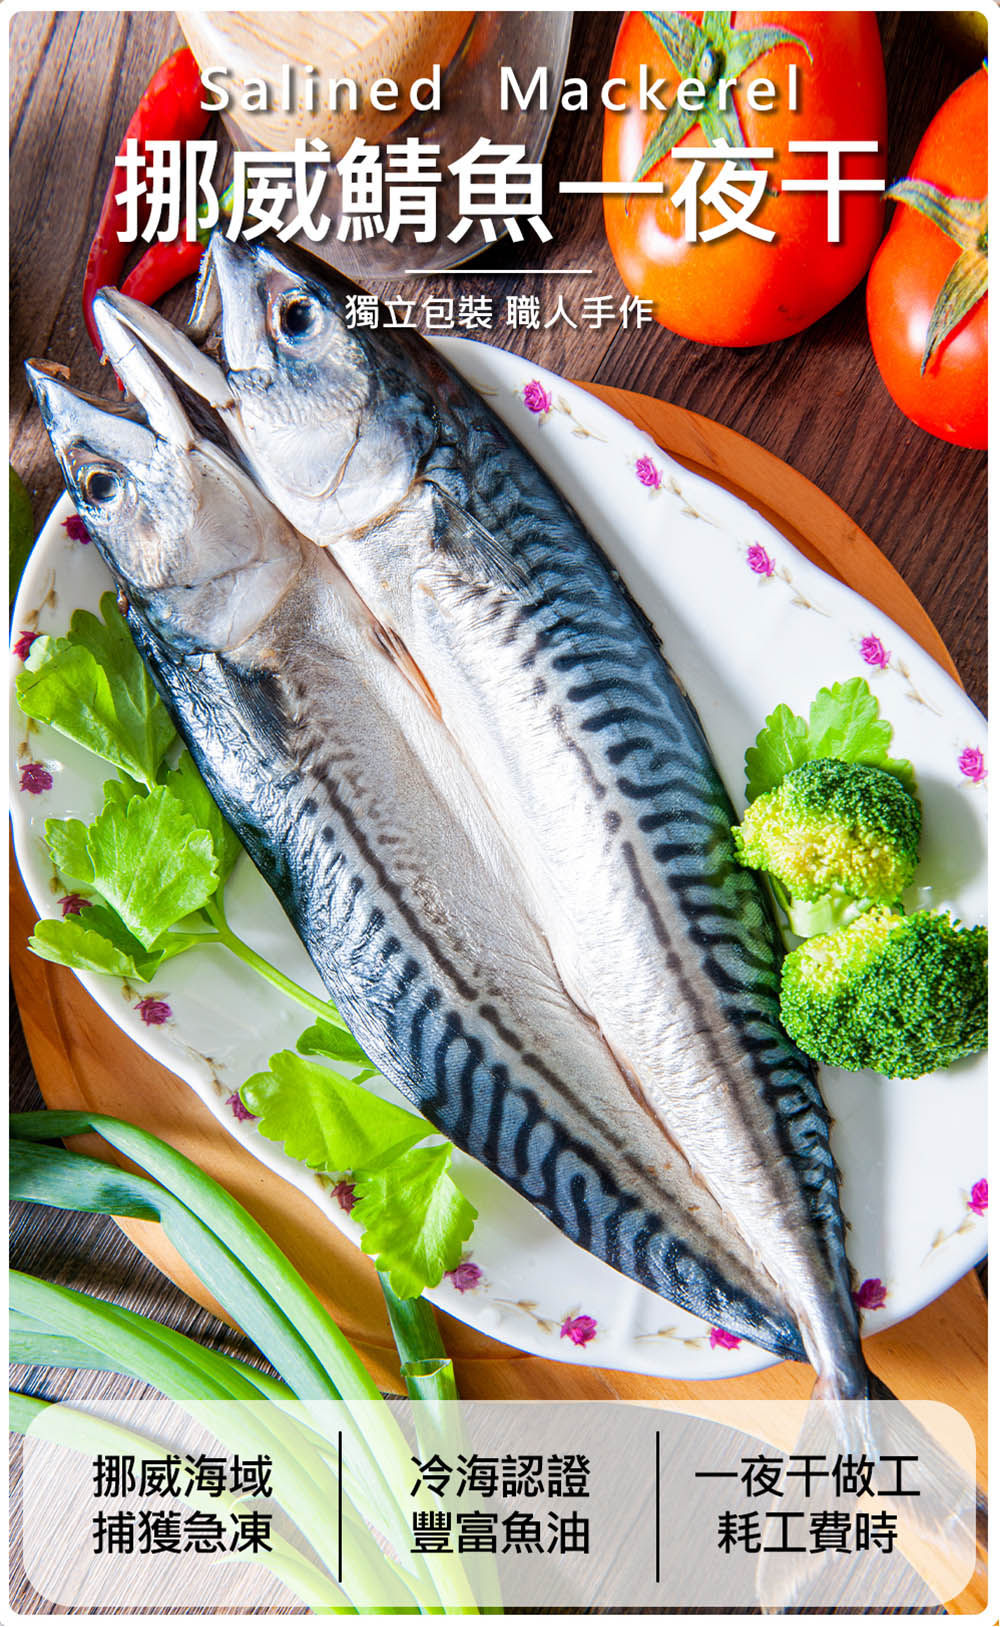       【鮮綠生活】挪威鯖魚一夜干(275g±10%/片 共10片)